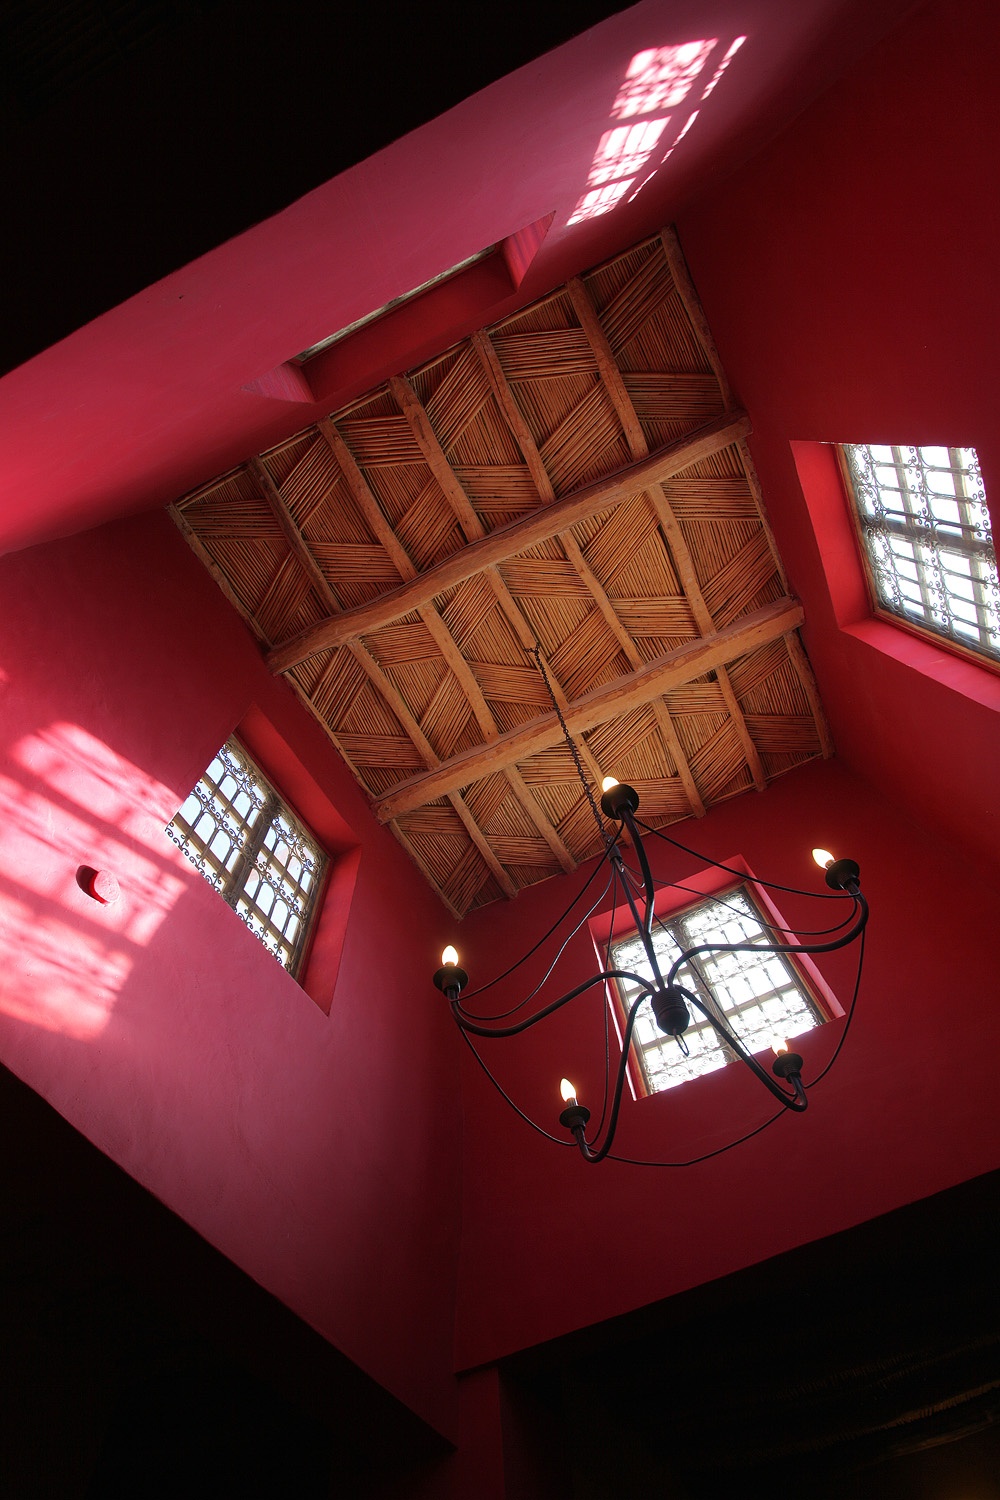 bill-hocker-dining-room-kasbah-ait-ben-moro-skoura-morocco-2013